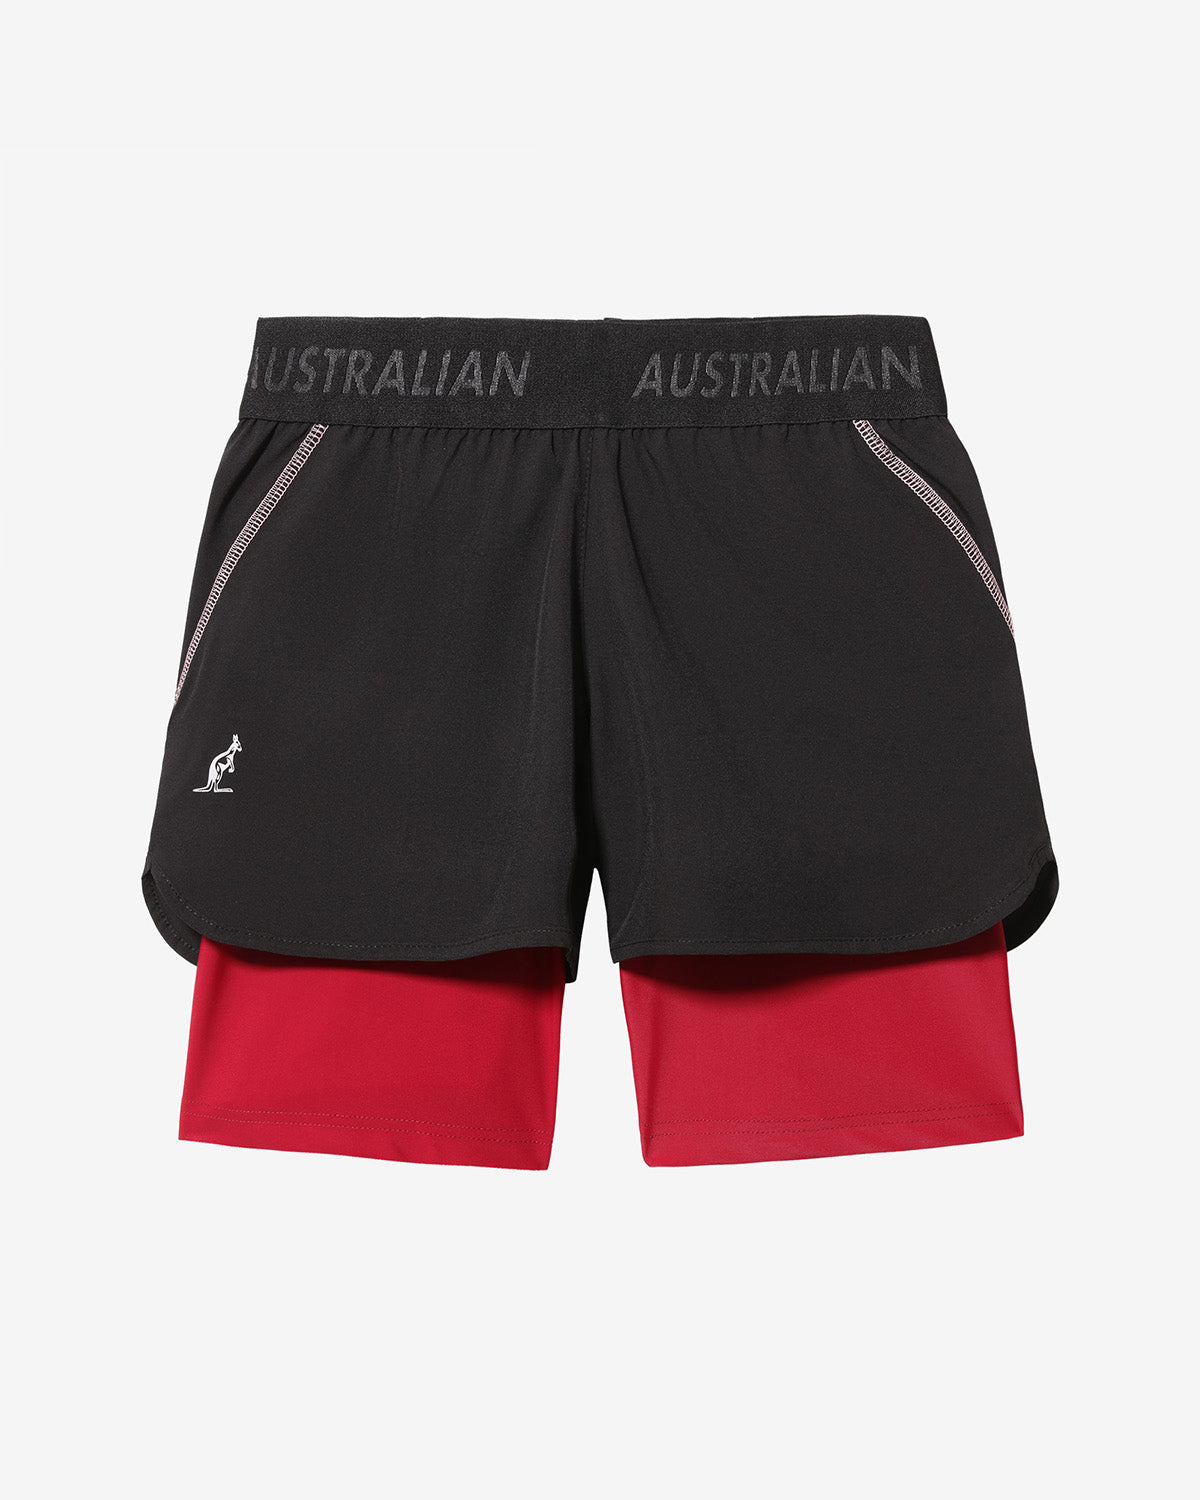 Match Short: Australian Tennis